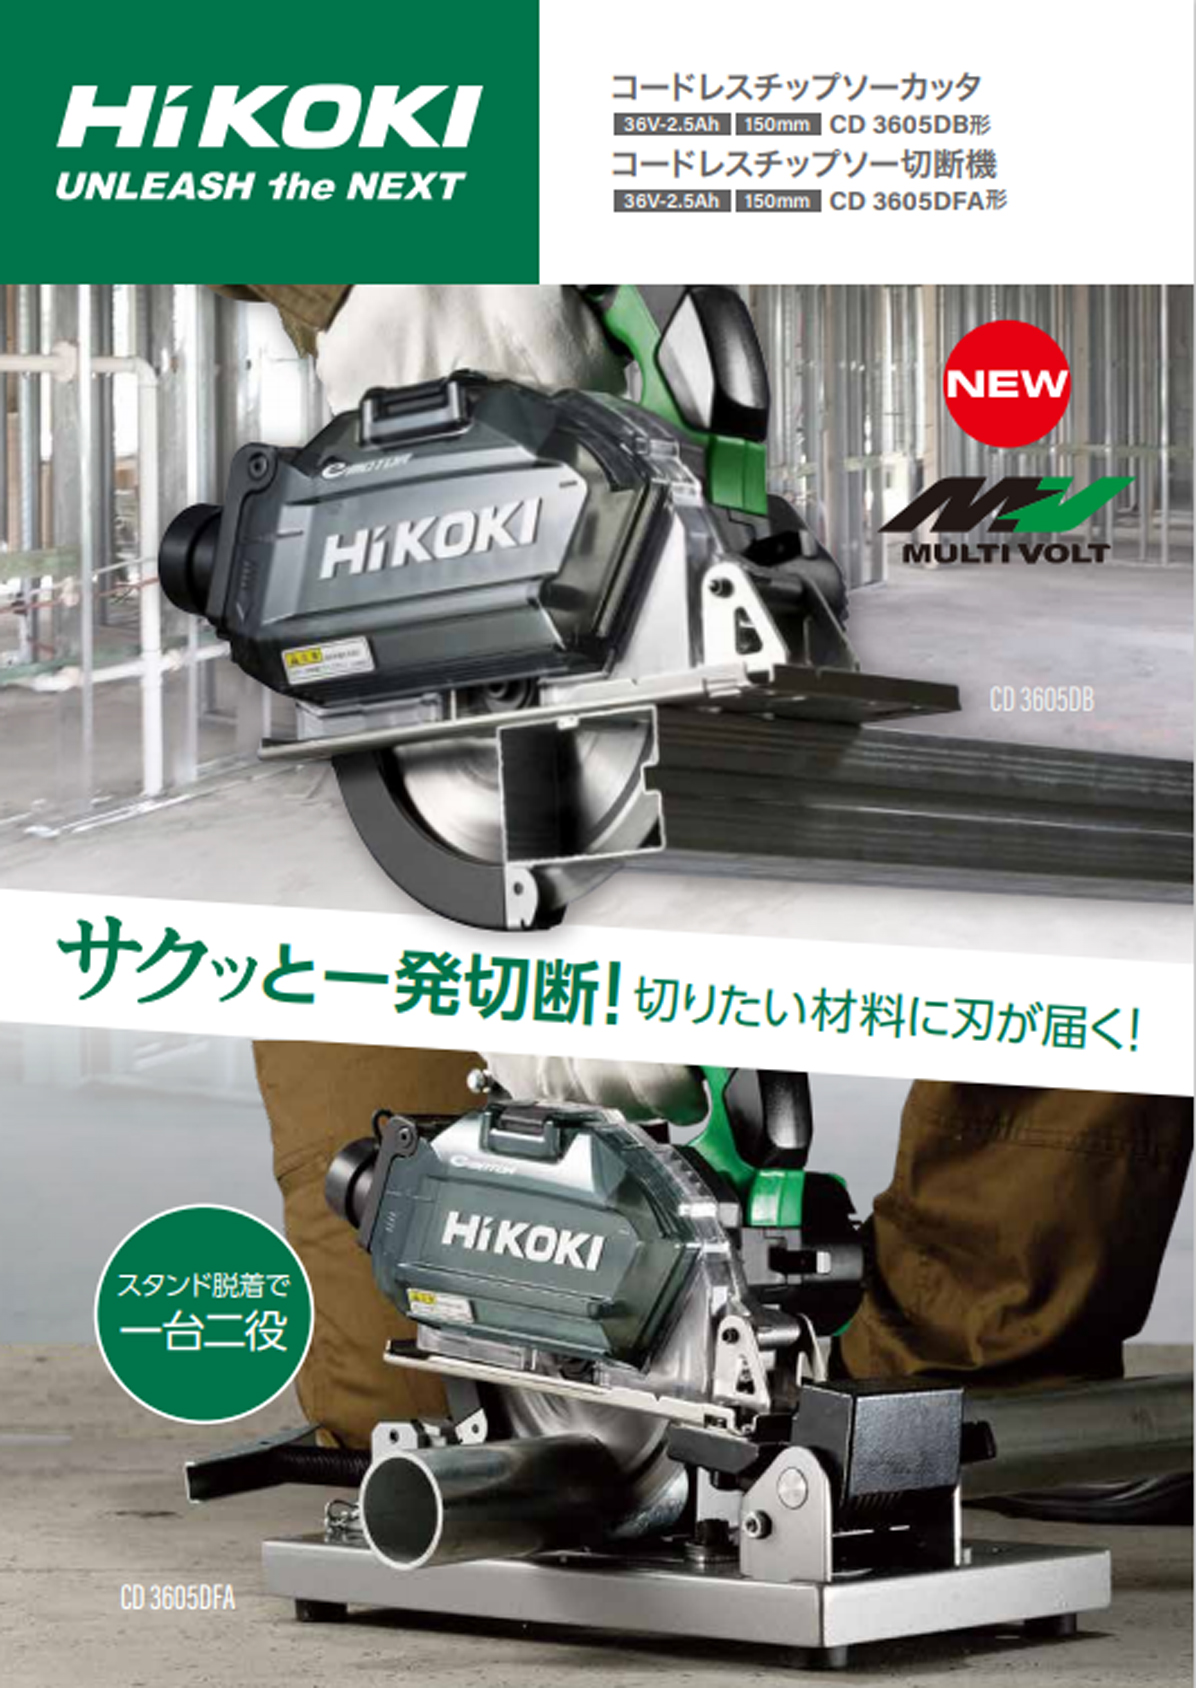 HiKOKI CD3605DFA(XP) 150mmコードレスチップソー切断機 ウエダ金物【公式サイト】